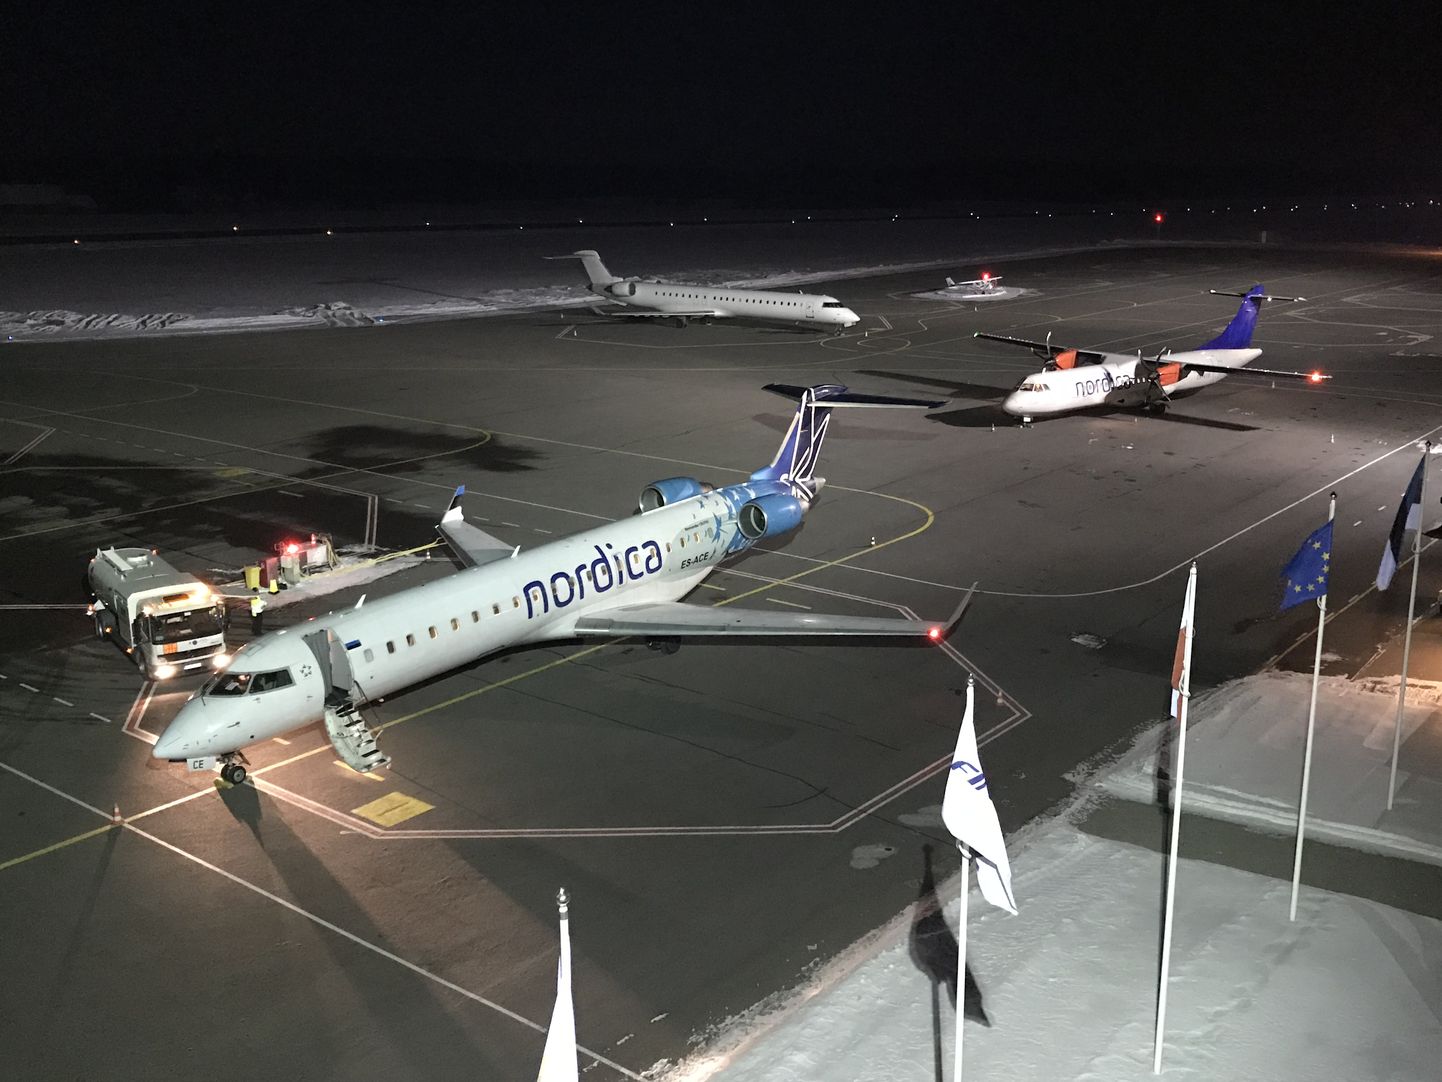 В среду три самолета Nordica приземлились в Тартуском аэропорту. На первом плане самолет из Киева, следующий - из Хельсинки и на заднем плане самолет из Вены.